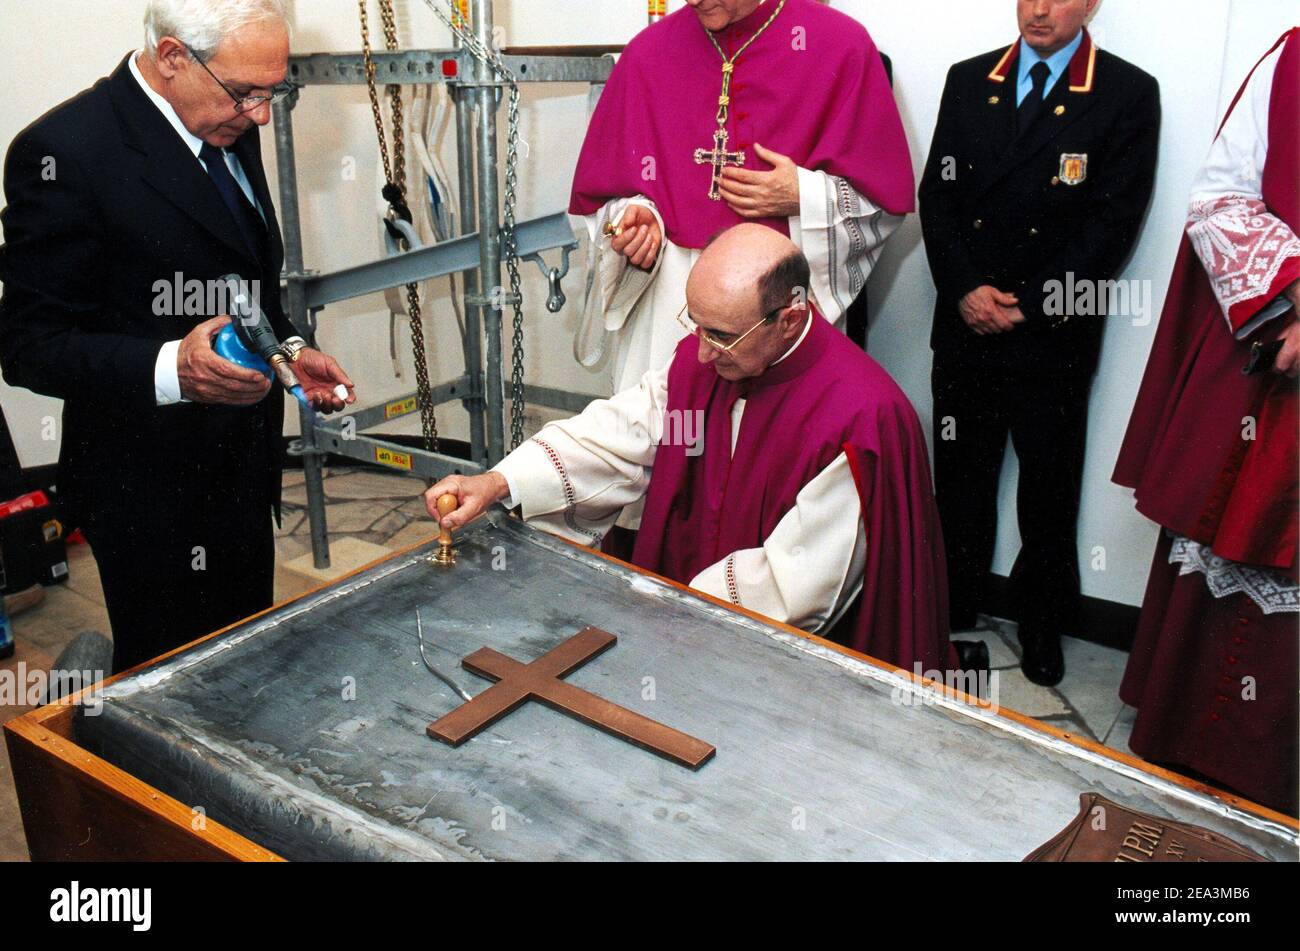 Funérailles de Jean-Paul II : Prelaes se préparent à souder le cercueil de  zinc du regretté Pape Jean-Paul II avant l'enterrement dans les grottes  sous la Basilique Saint-Pierre, au Vatican, le vendredi